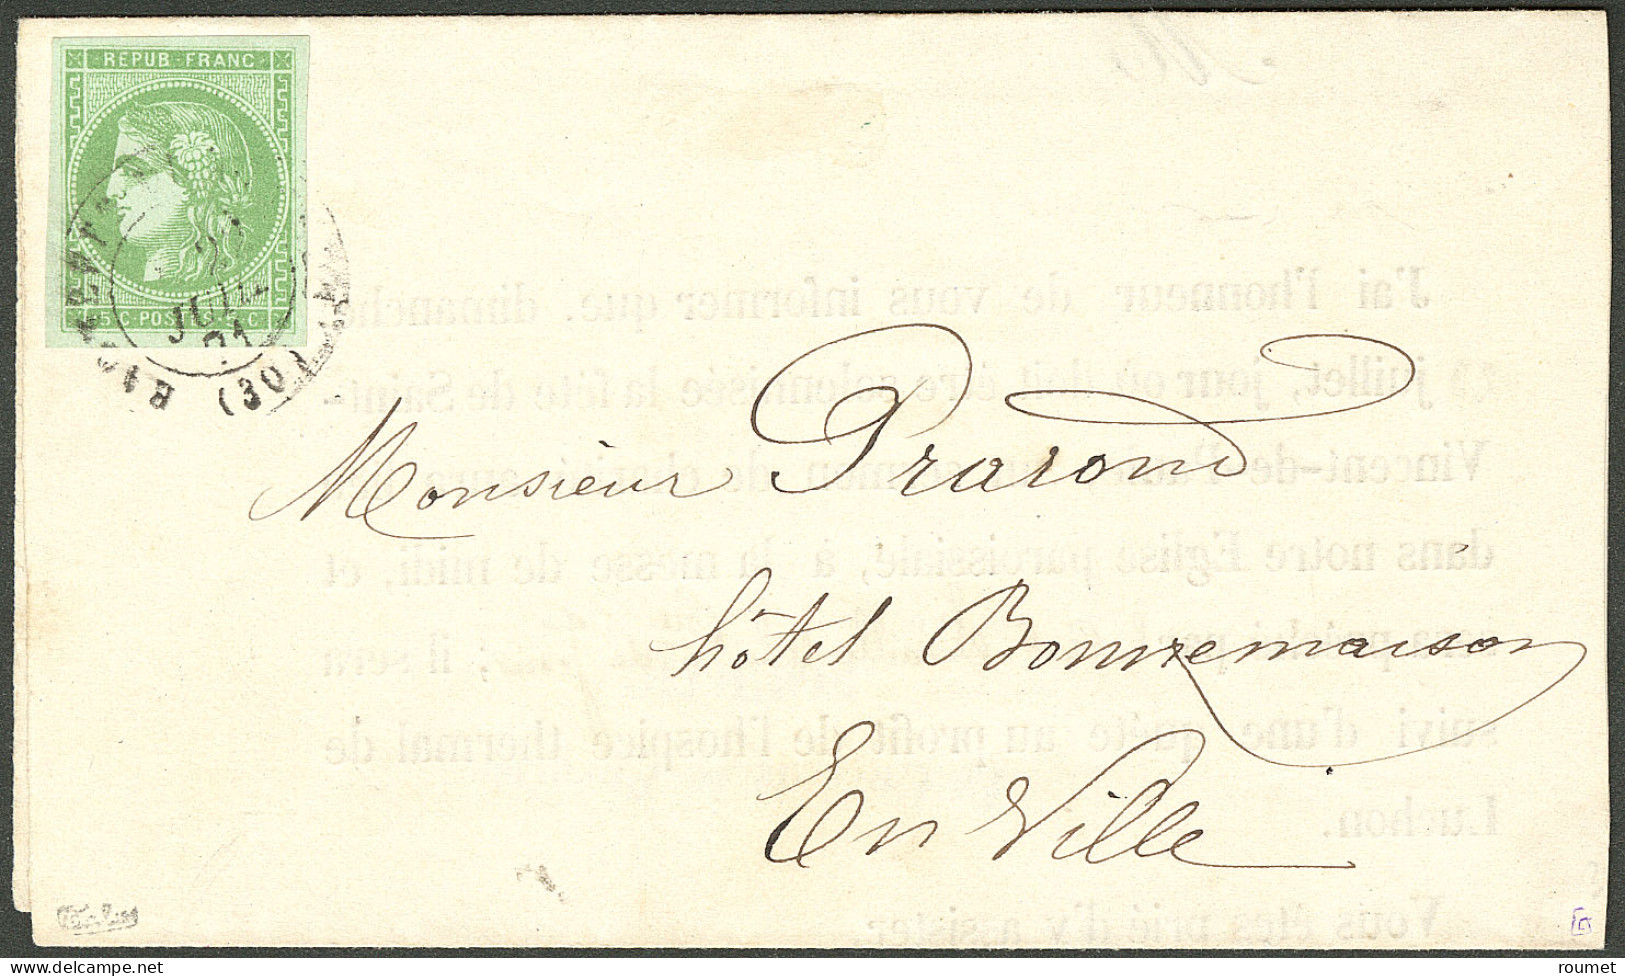 Lettre No 42B, Obl Cad Bagnères De Luchon 20 Juil 71, Seul Sur Imprimé Local, Superbe. - R - 1870 Ausgabe Bordeaux